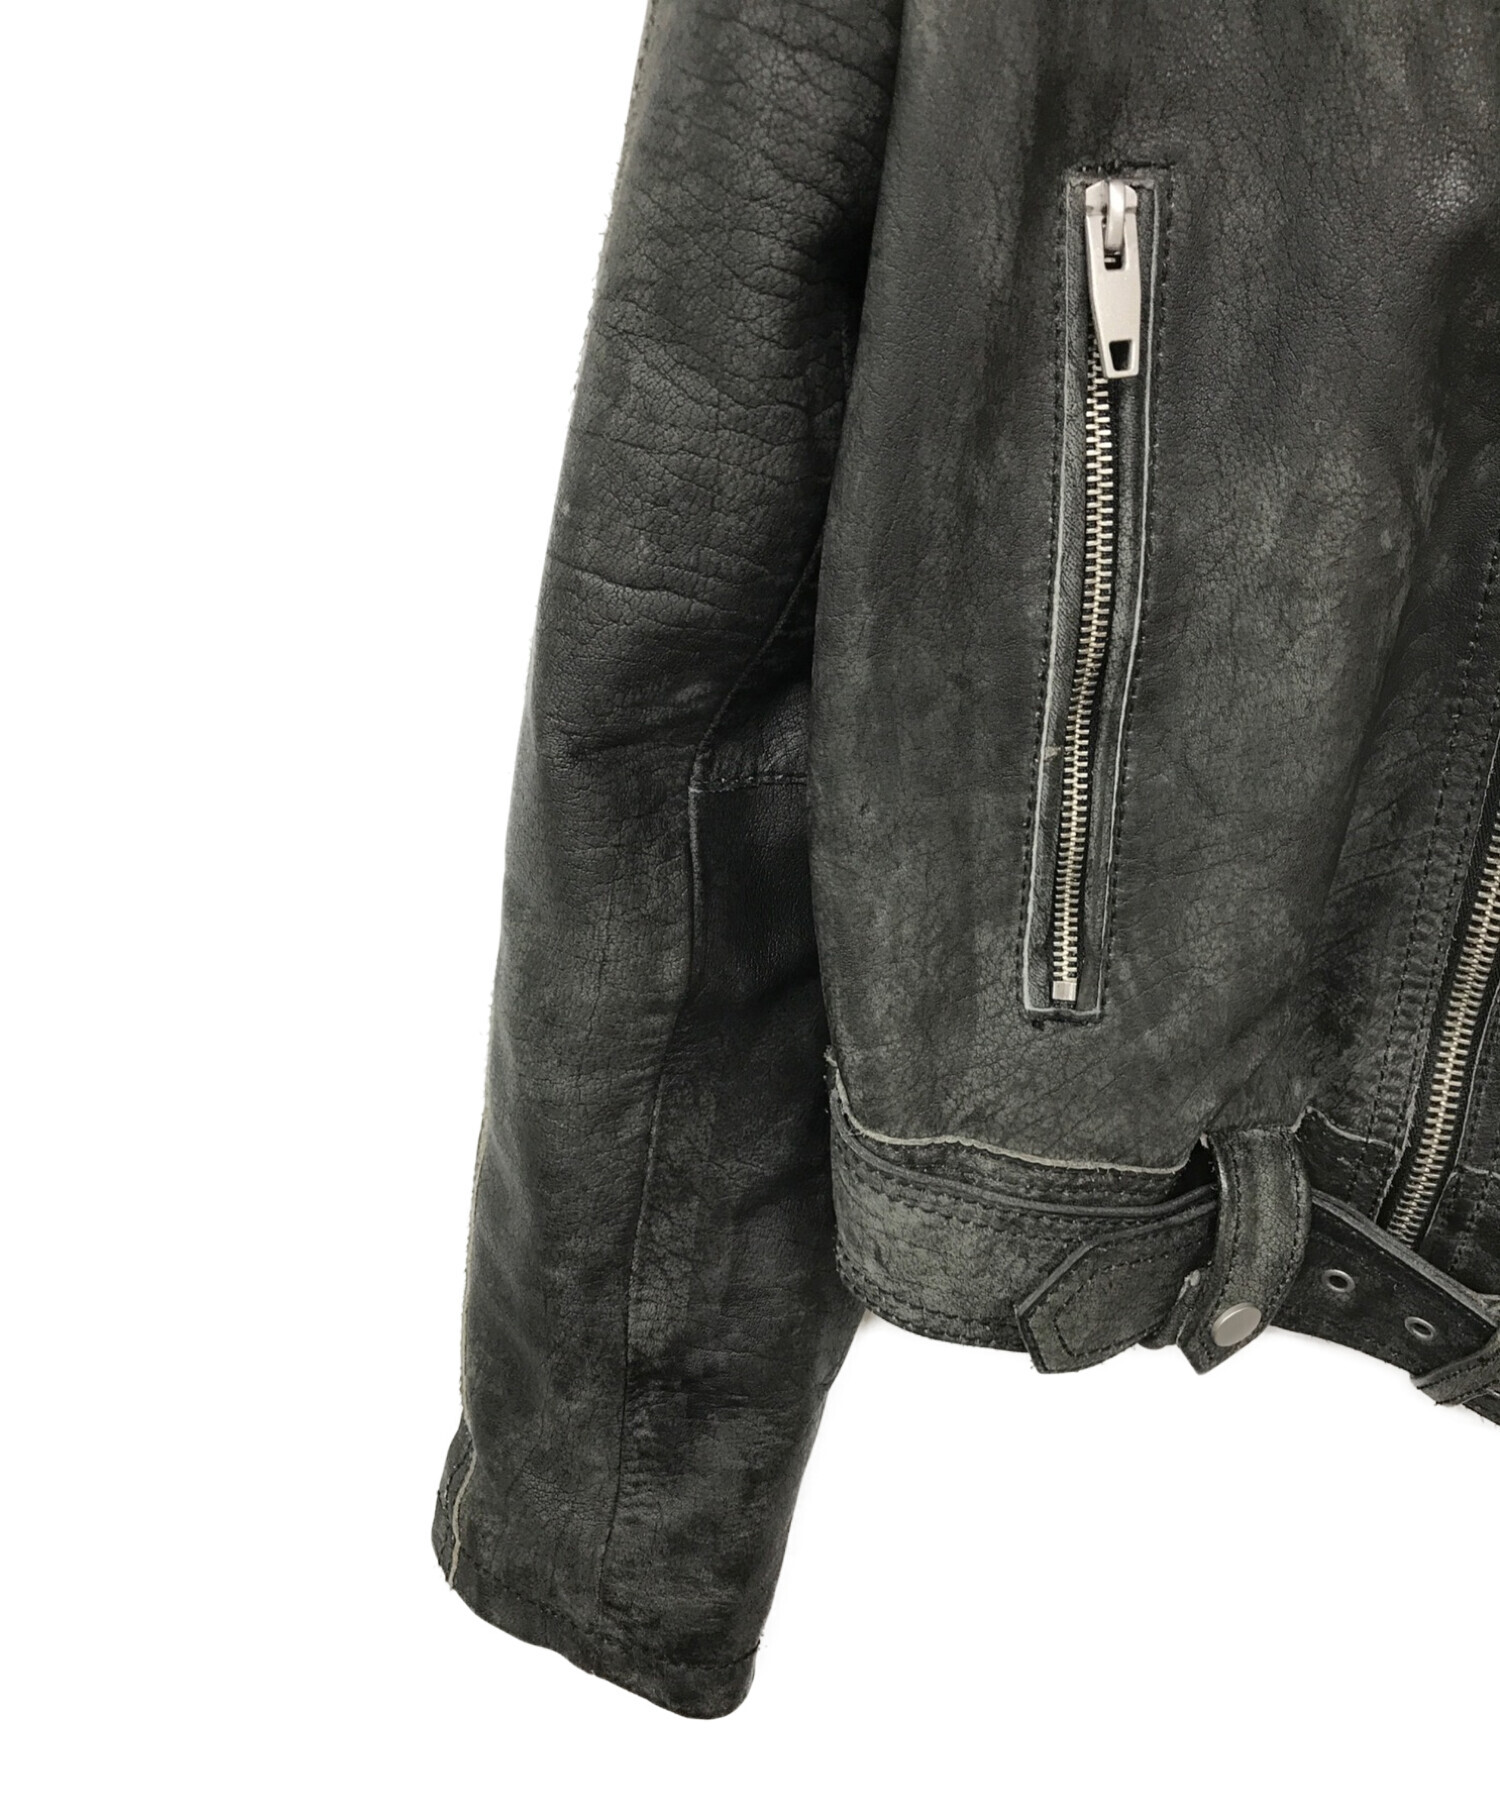 ZARA (ザラ) ヴィンテージ加工ライダースジャケット ブラック サイズ:M